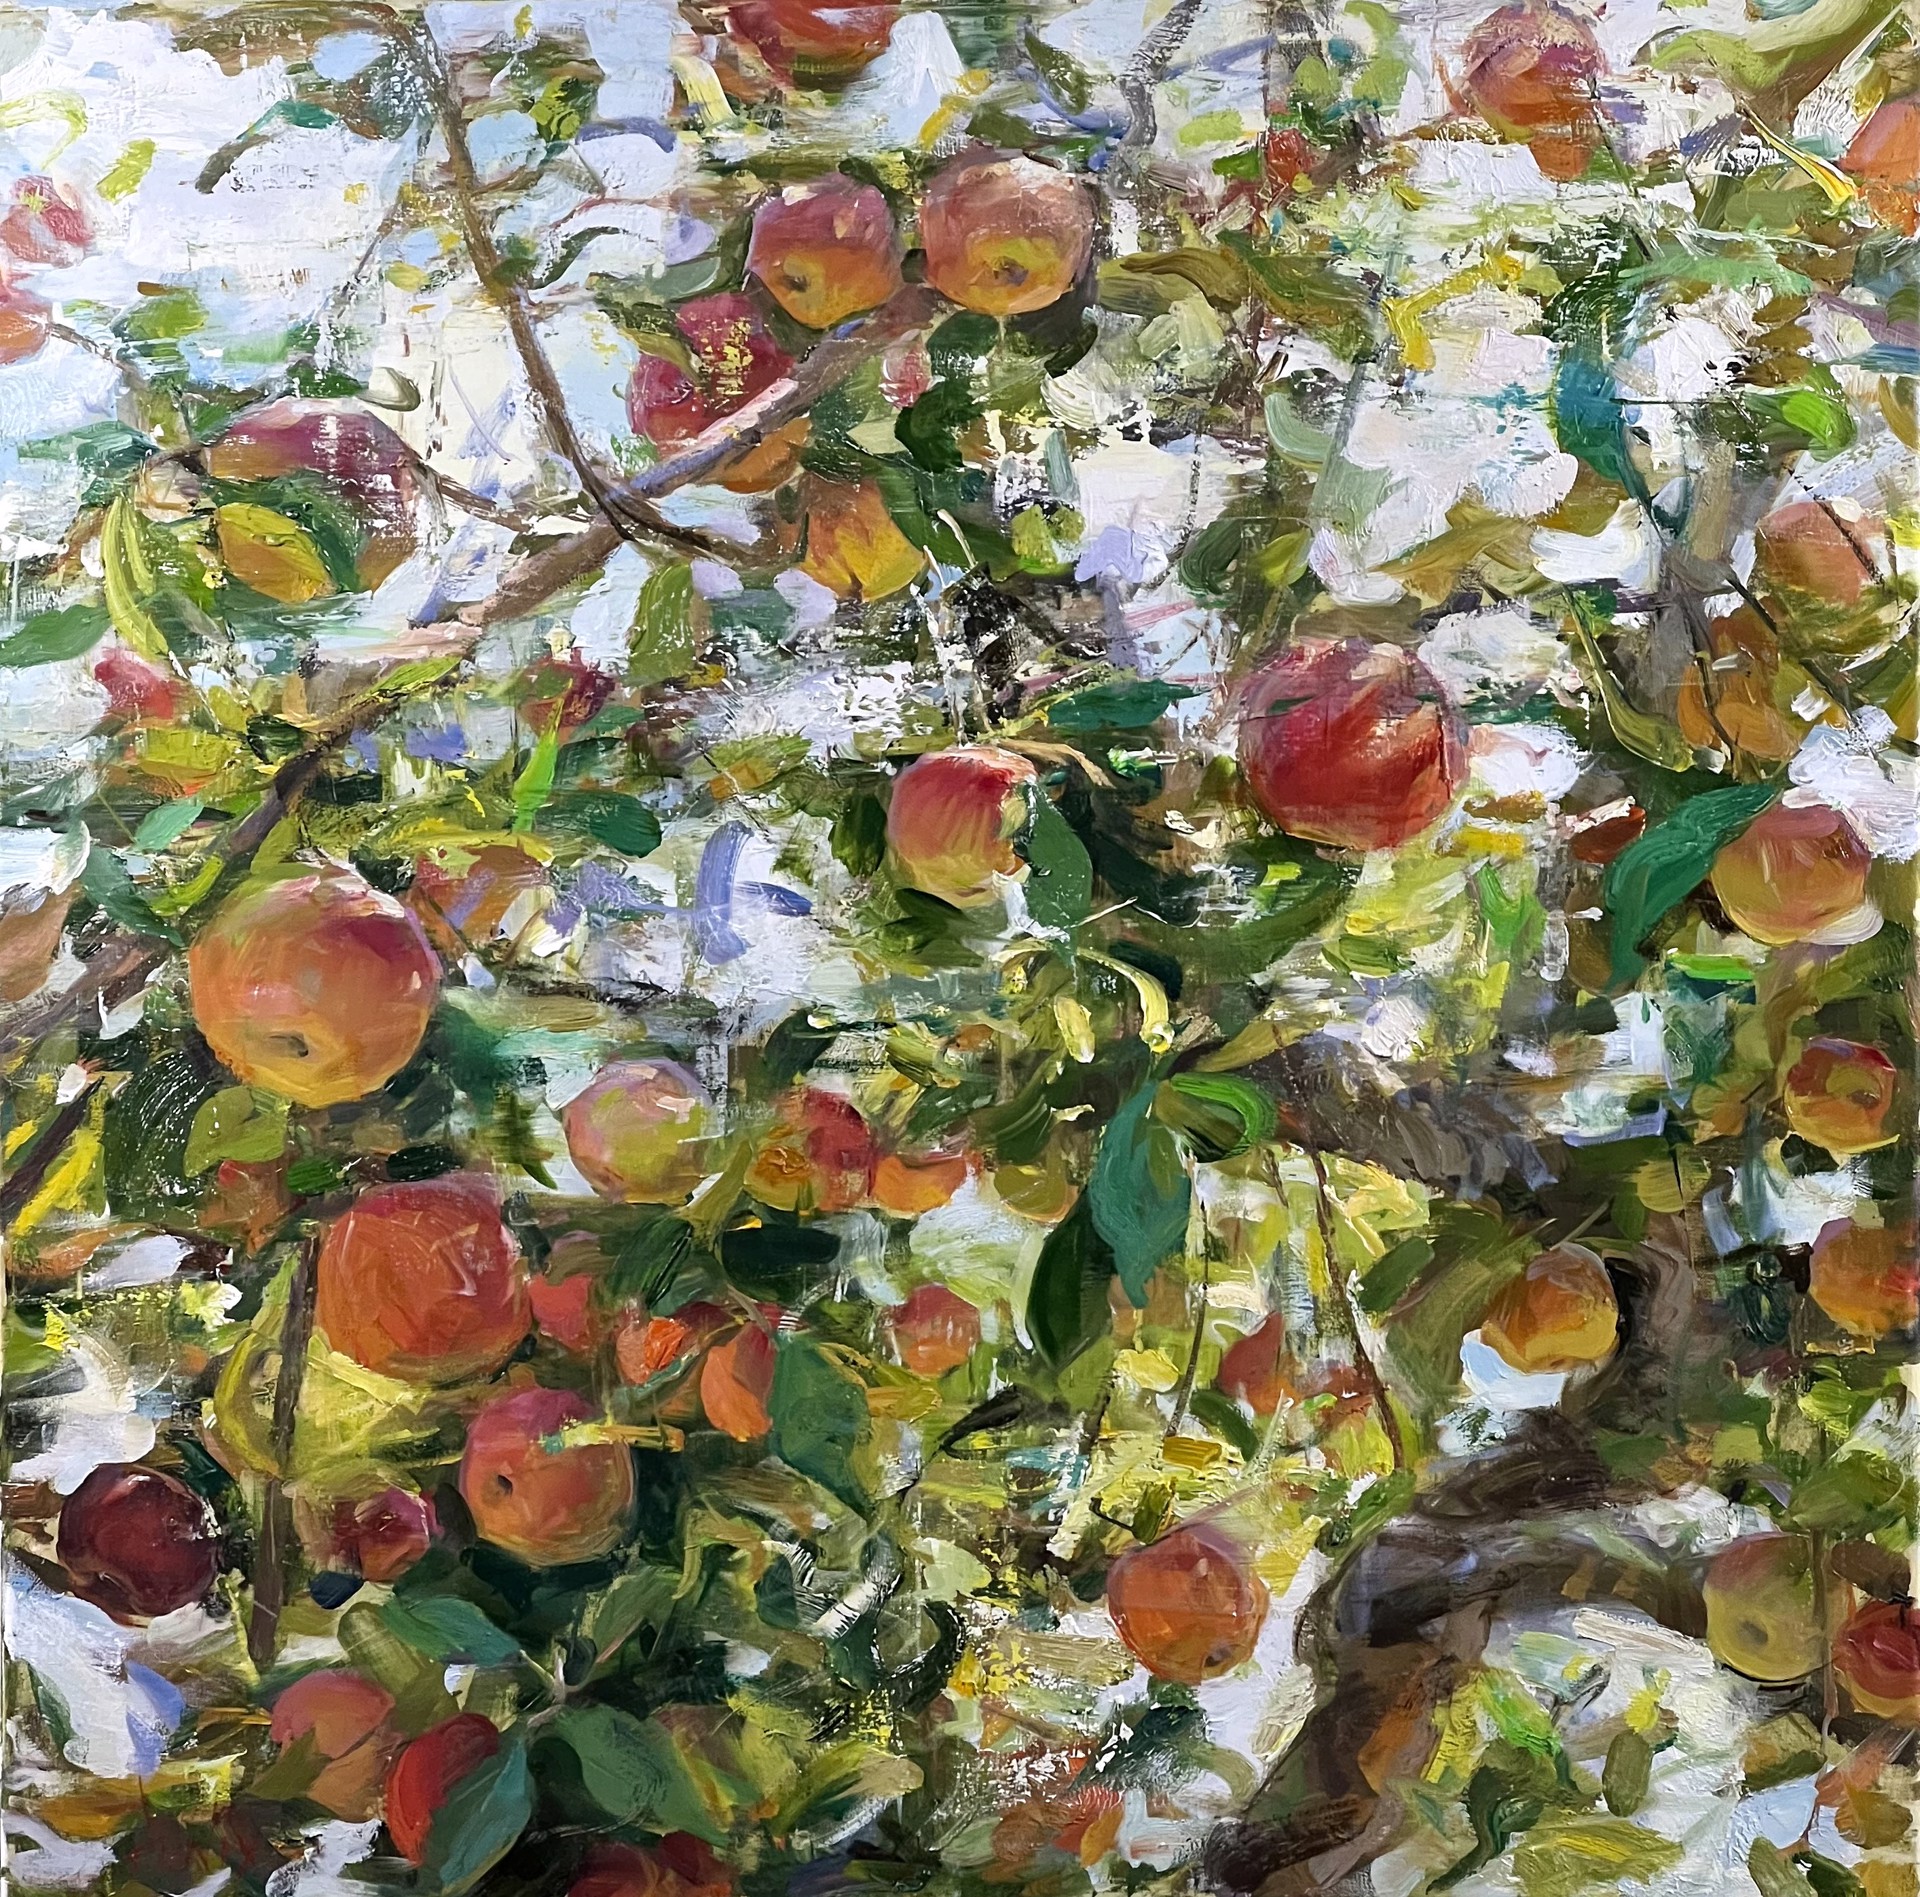 Apples by Derek Penix